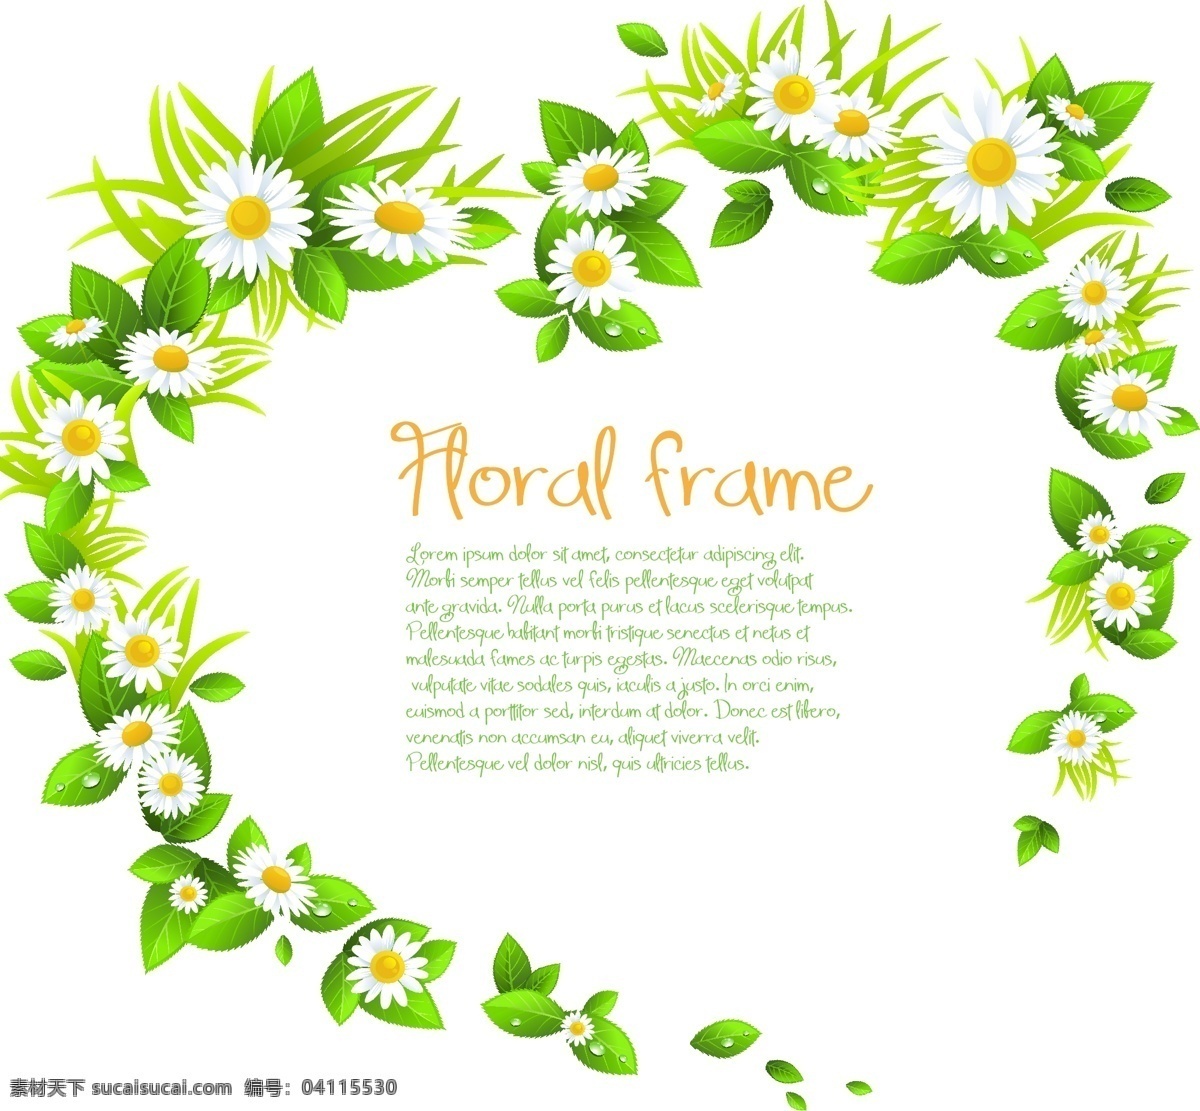 鲜花 装饰 绿色 背景 矢量 白色花朵 绿色背景 绿叶 模板 设计稿 素材元素 鲜花边框 鲜花装饰 花卉 免费 源文件 矢量图